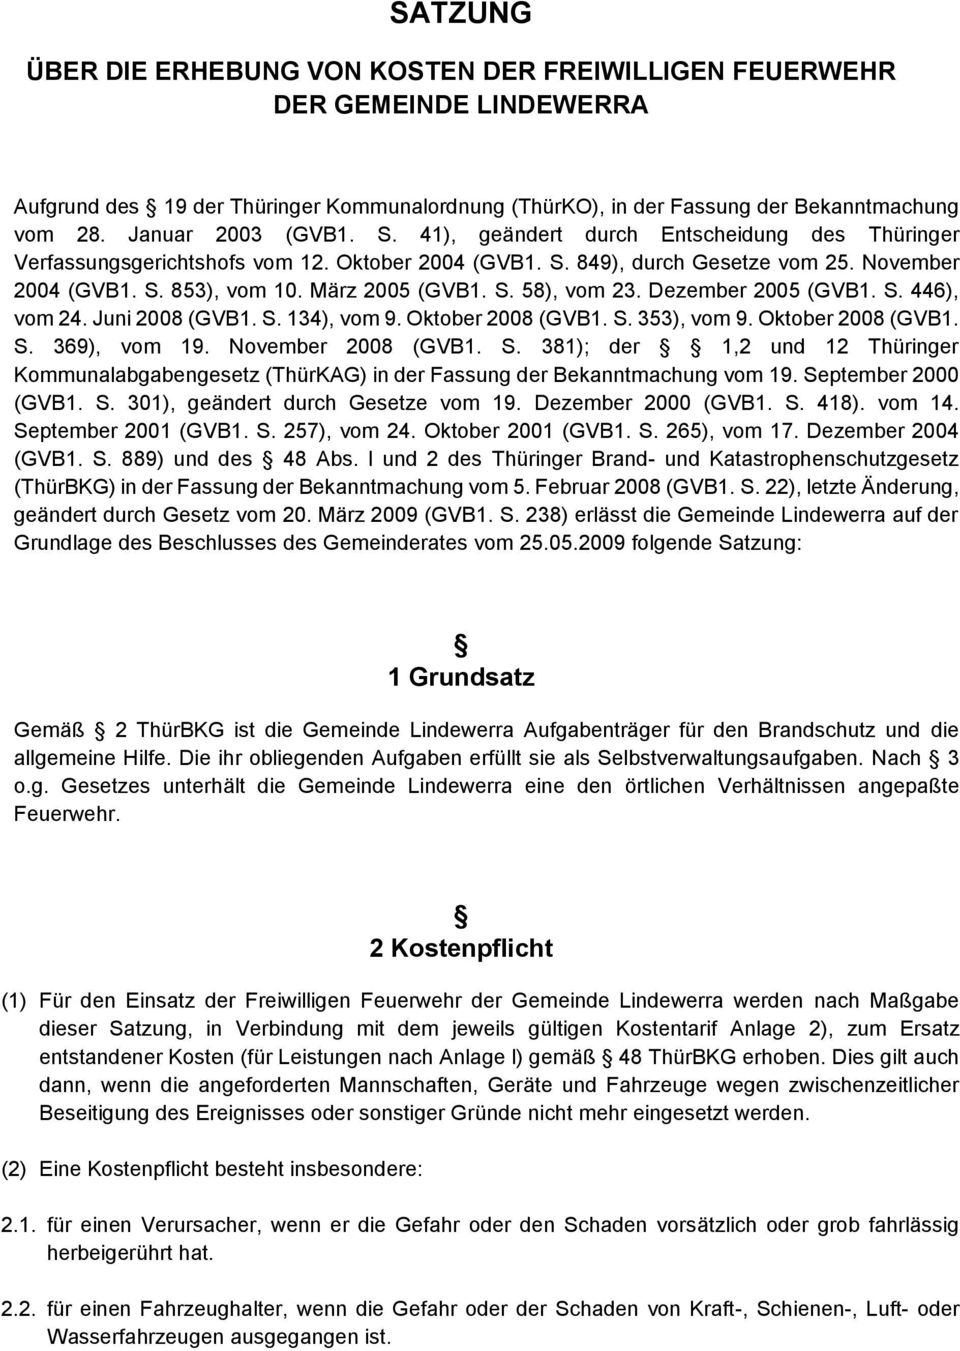 März 2005 (GVB1. S. 58), vom 23. Dezember 2005 (GVB1. S. 446), vom 24. Juni 2008 (GVB1. S. 134), vom 9. Oktober 2008 (GVB1. S. 353), vom 9. Oktober 2008 (GVB1. S. 369), vom 19. November 2008 (GVB1. S. 381); der 1,2 und 12 Thüringer Kommunalabgabengesetz (ThürKAG) in der Fassung der Bekanntmachung vom 19.